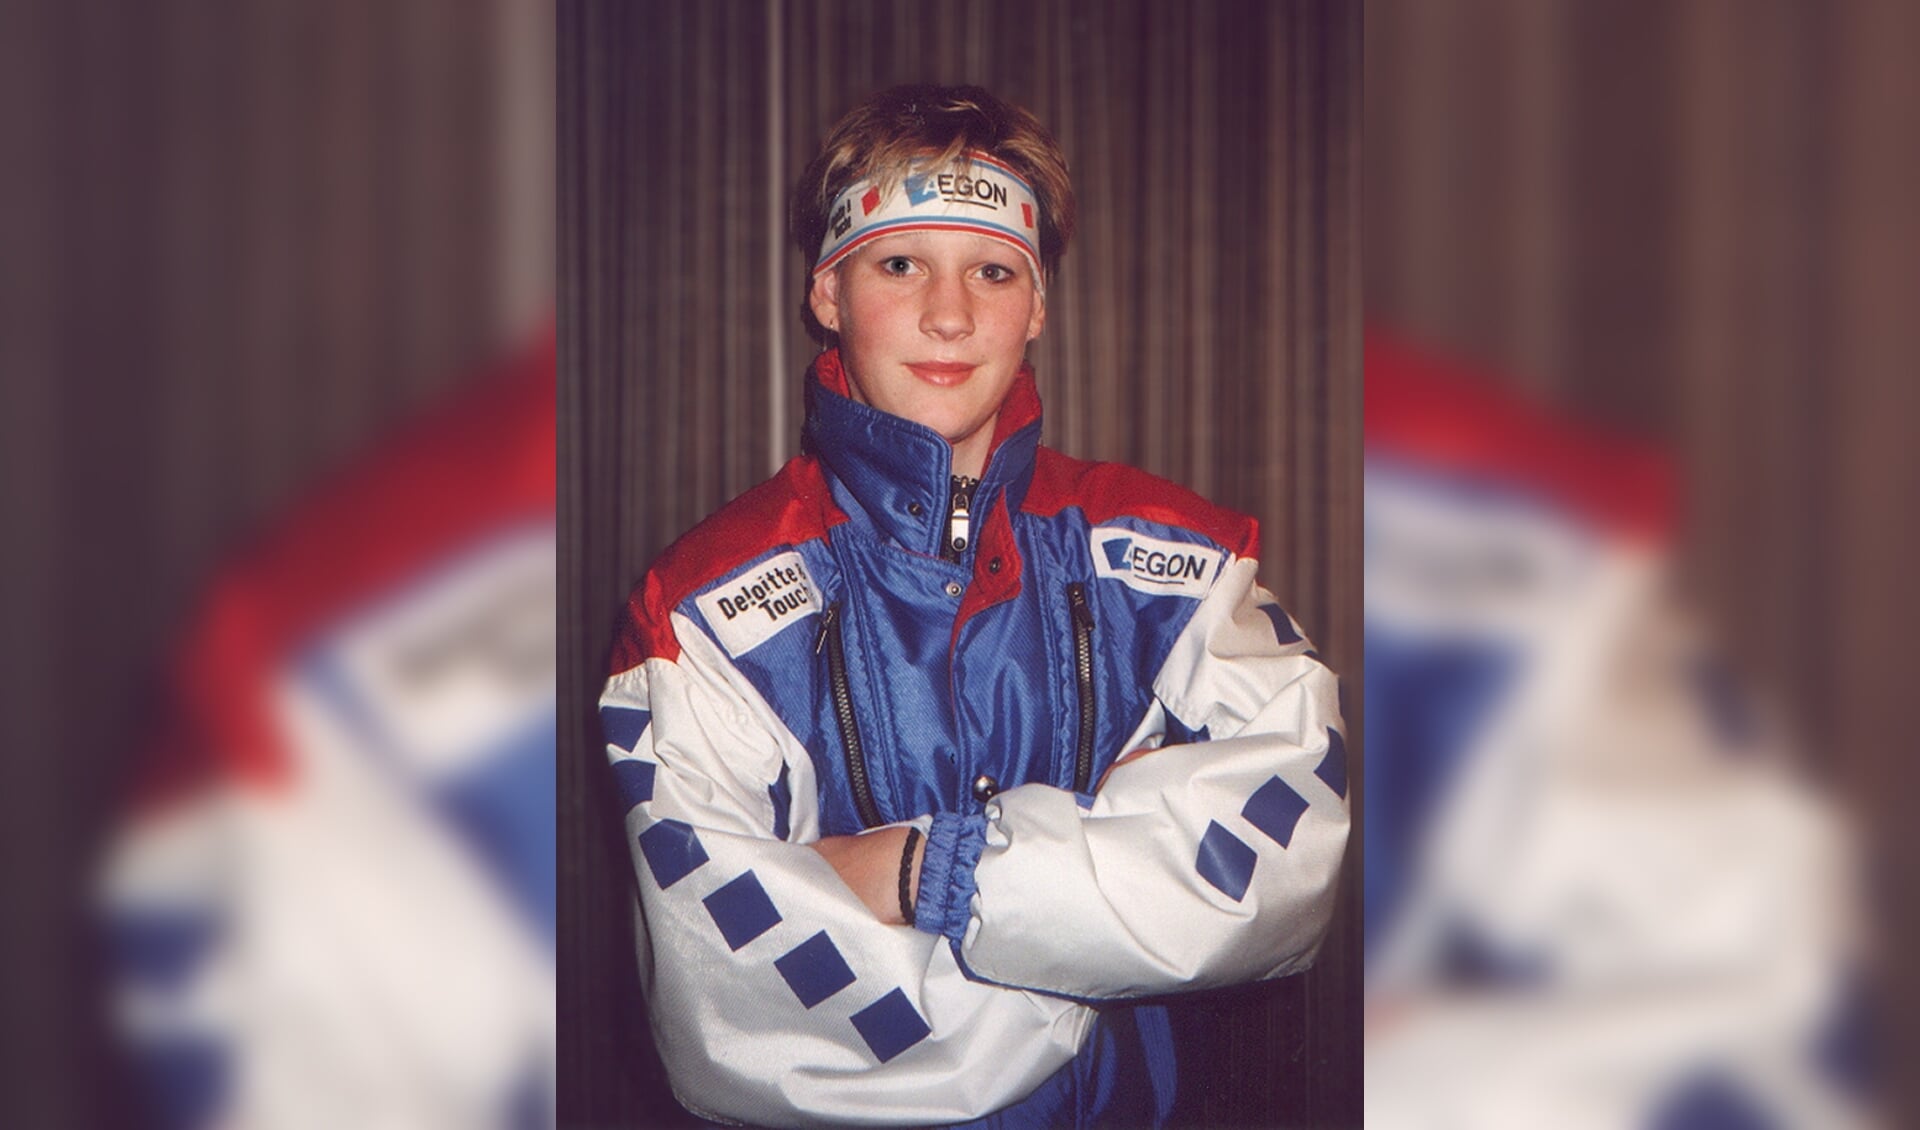 Marieke Wijsman brak door in het schaatsseizoen van '97/'98 toen ze zich wist te plaatsen voor de Olympische Winterspelen van '98 in Nagano. Ook vier jaar later in Salt Lake City nam ze deel.